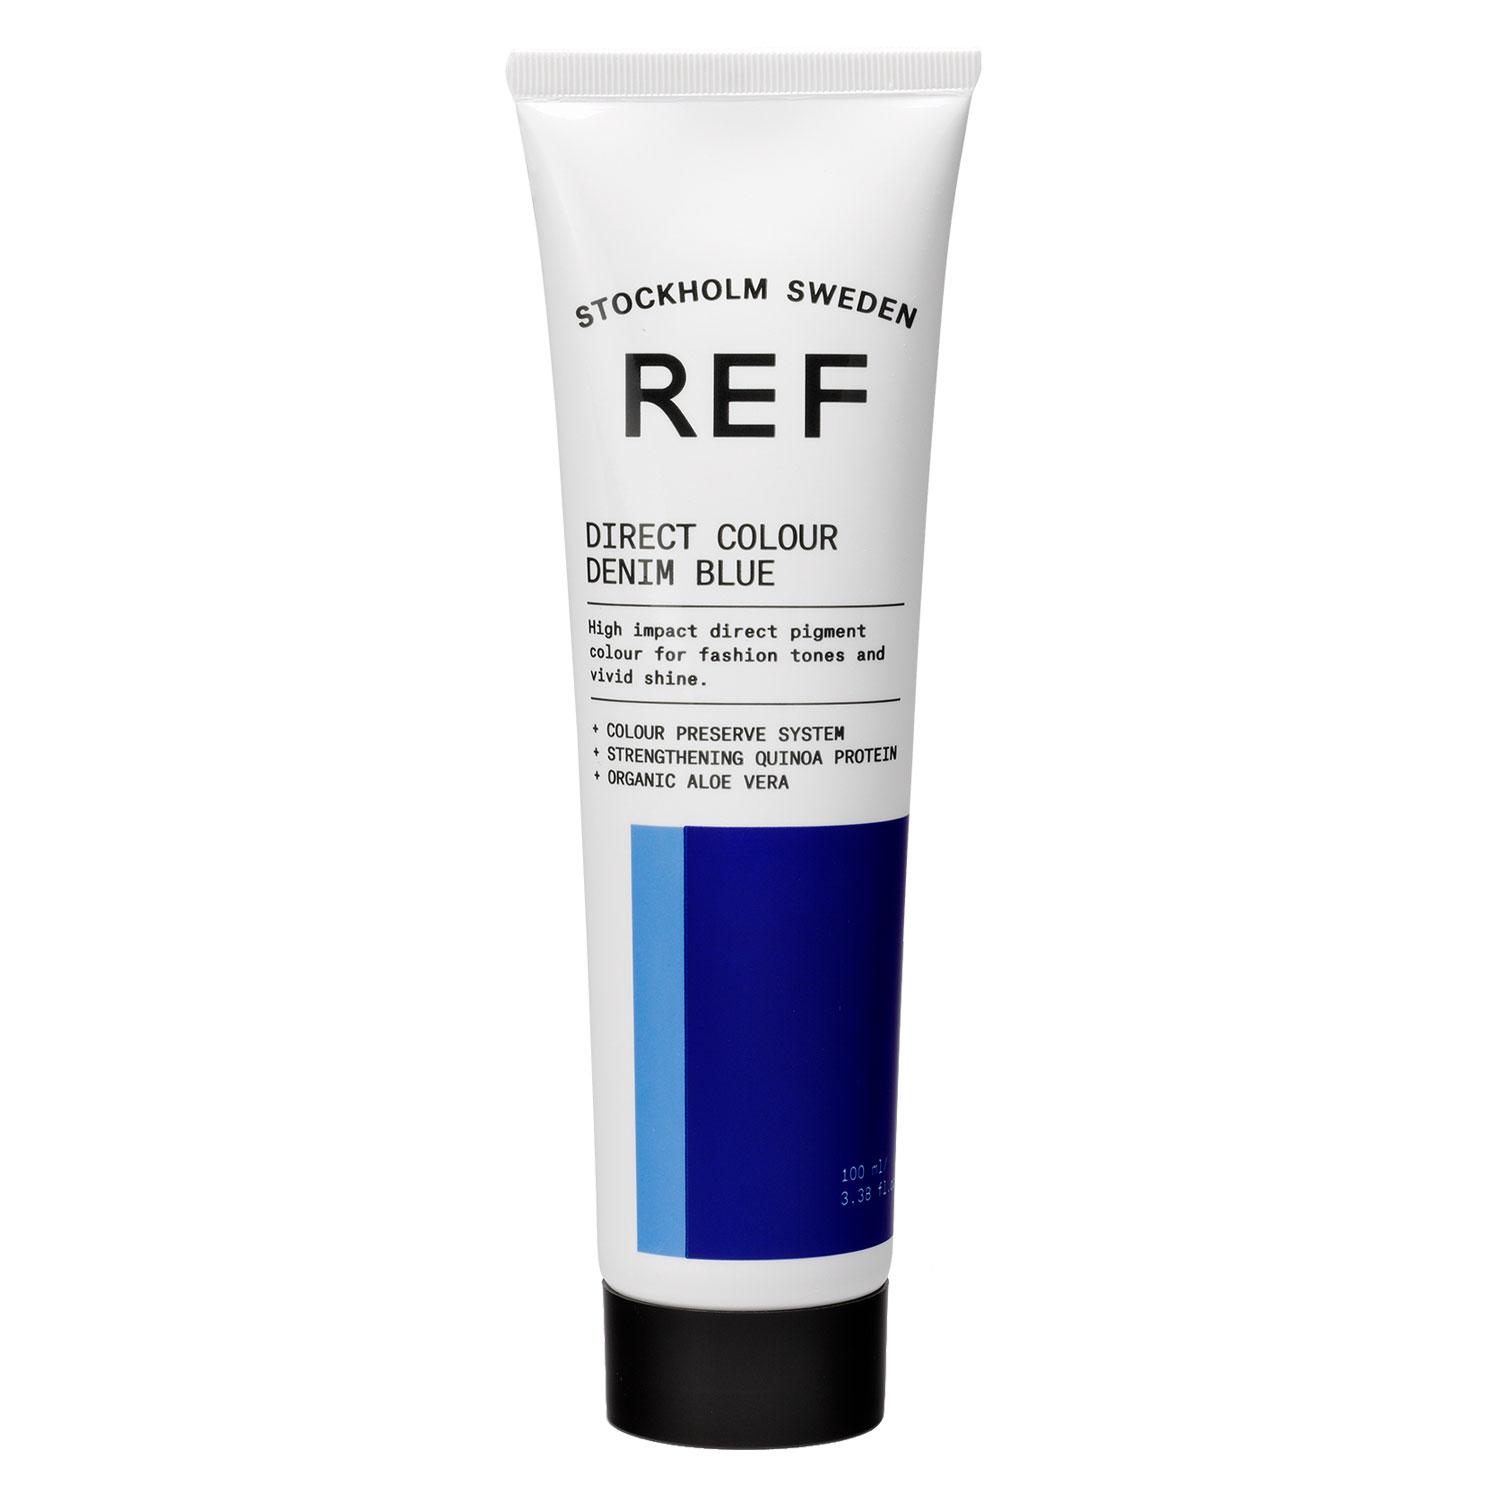 REF Direct Colour - Denim Blue